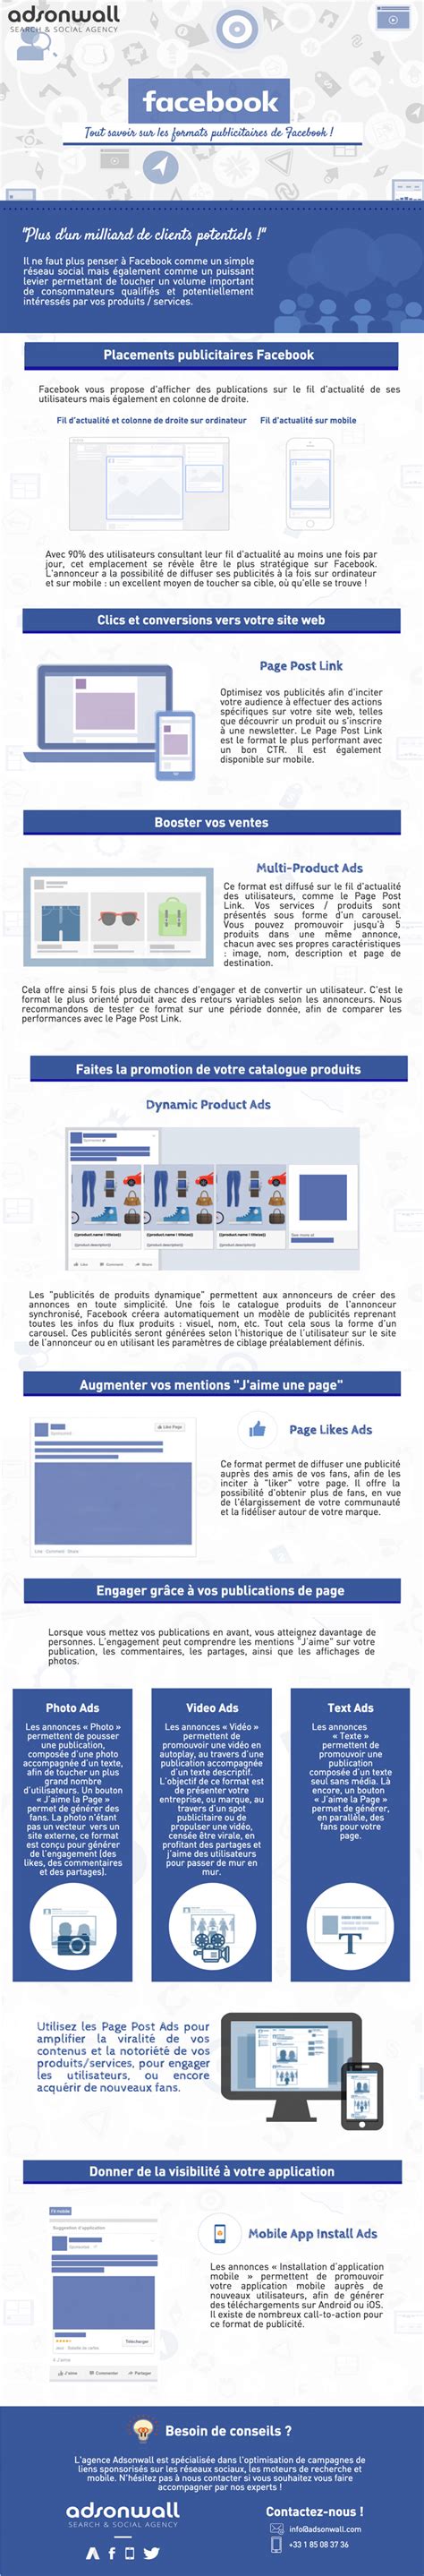 Facebook Ads Guide Des Formats Dannonces Publicitaires Facebook